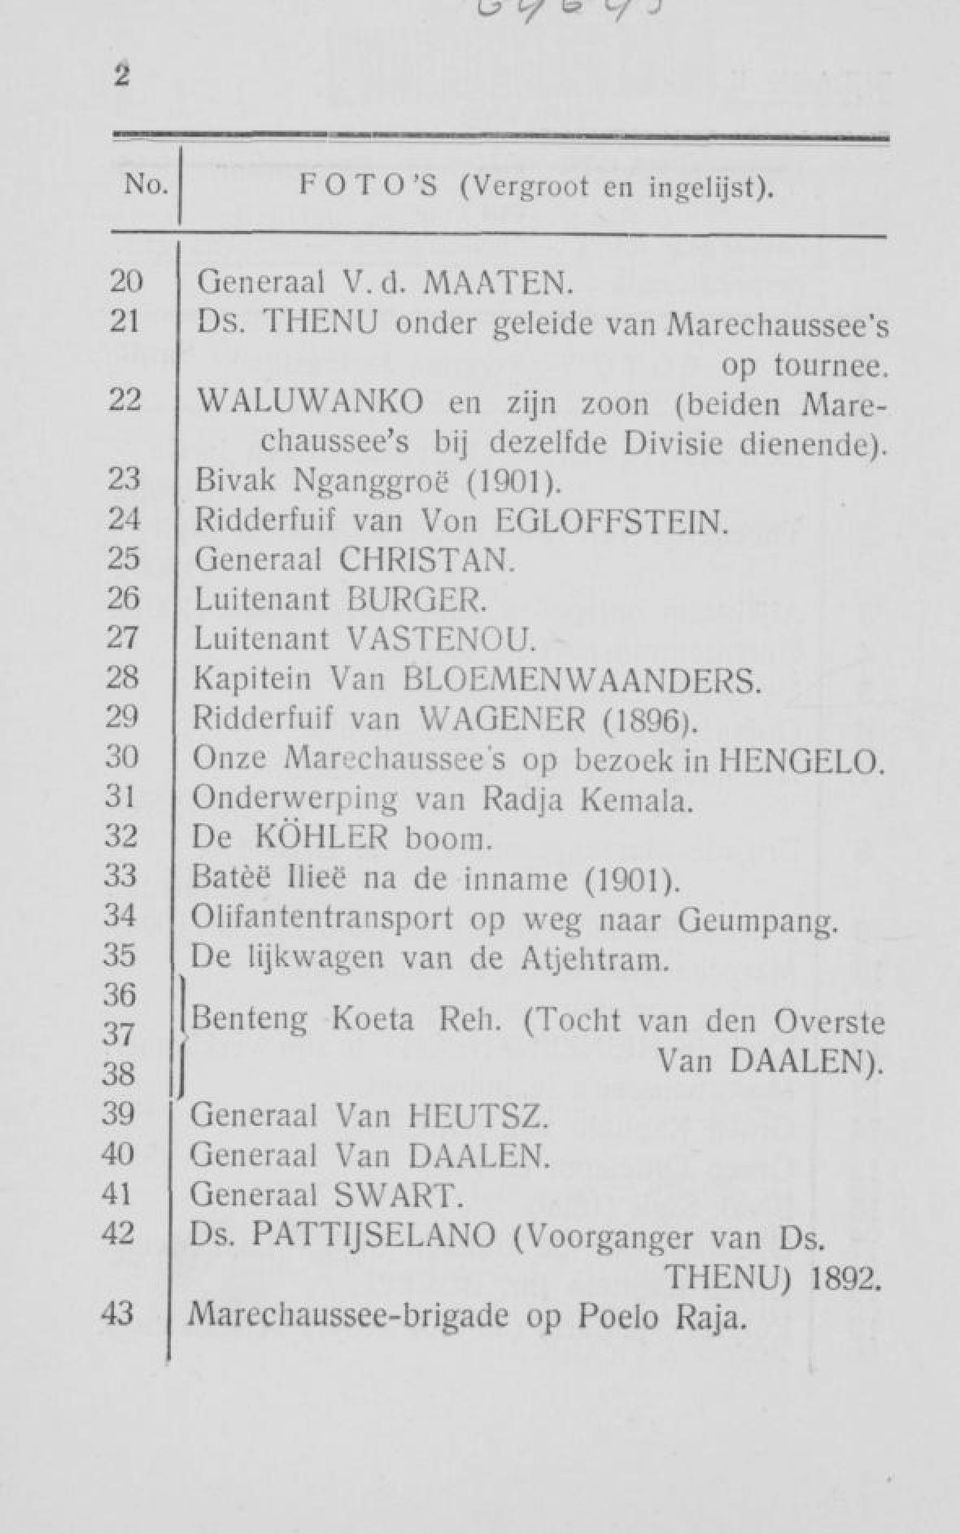 27 Luitenant VASTENOU. 28 Kapitein Van BLOEMENWAANDERS. 29 Ridderfuif van WAGENER (1896). 30 Onze Marechaussee's op bezoek in HENGELO. 31 Onderwerping van Radja Kemala. 32 De KÖHLER boom.